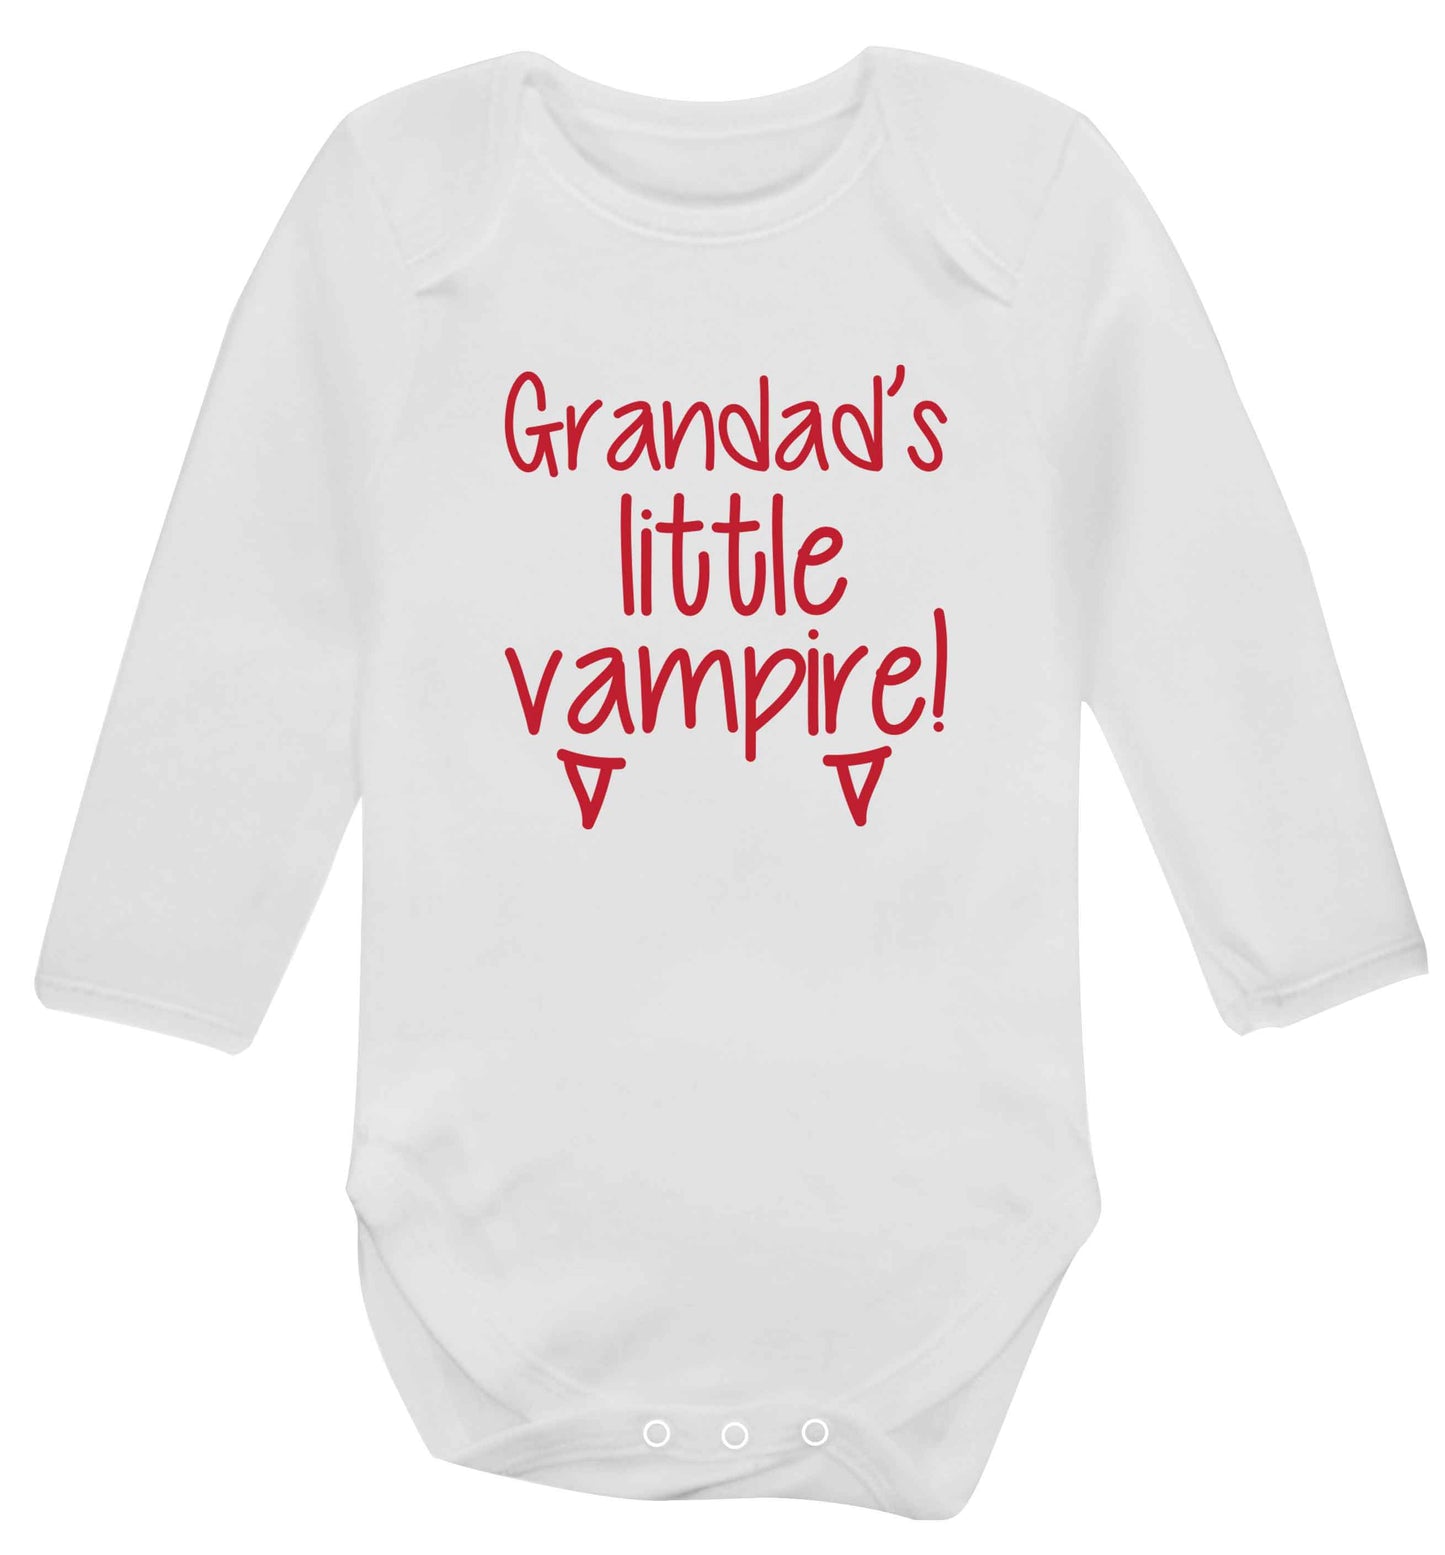 Grandad's little vampire baby vest long sleeved white 6-12 months